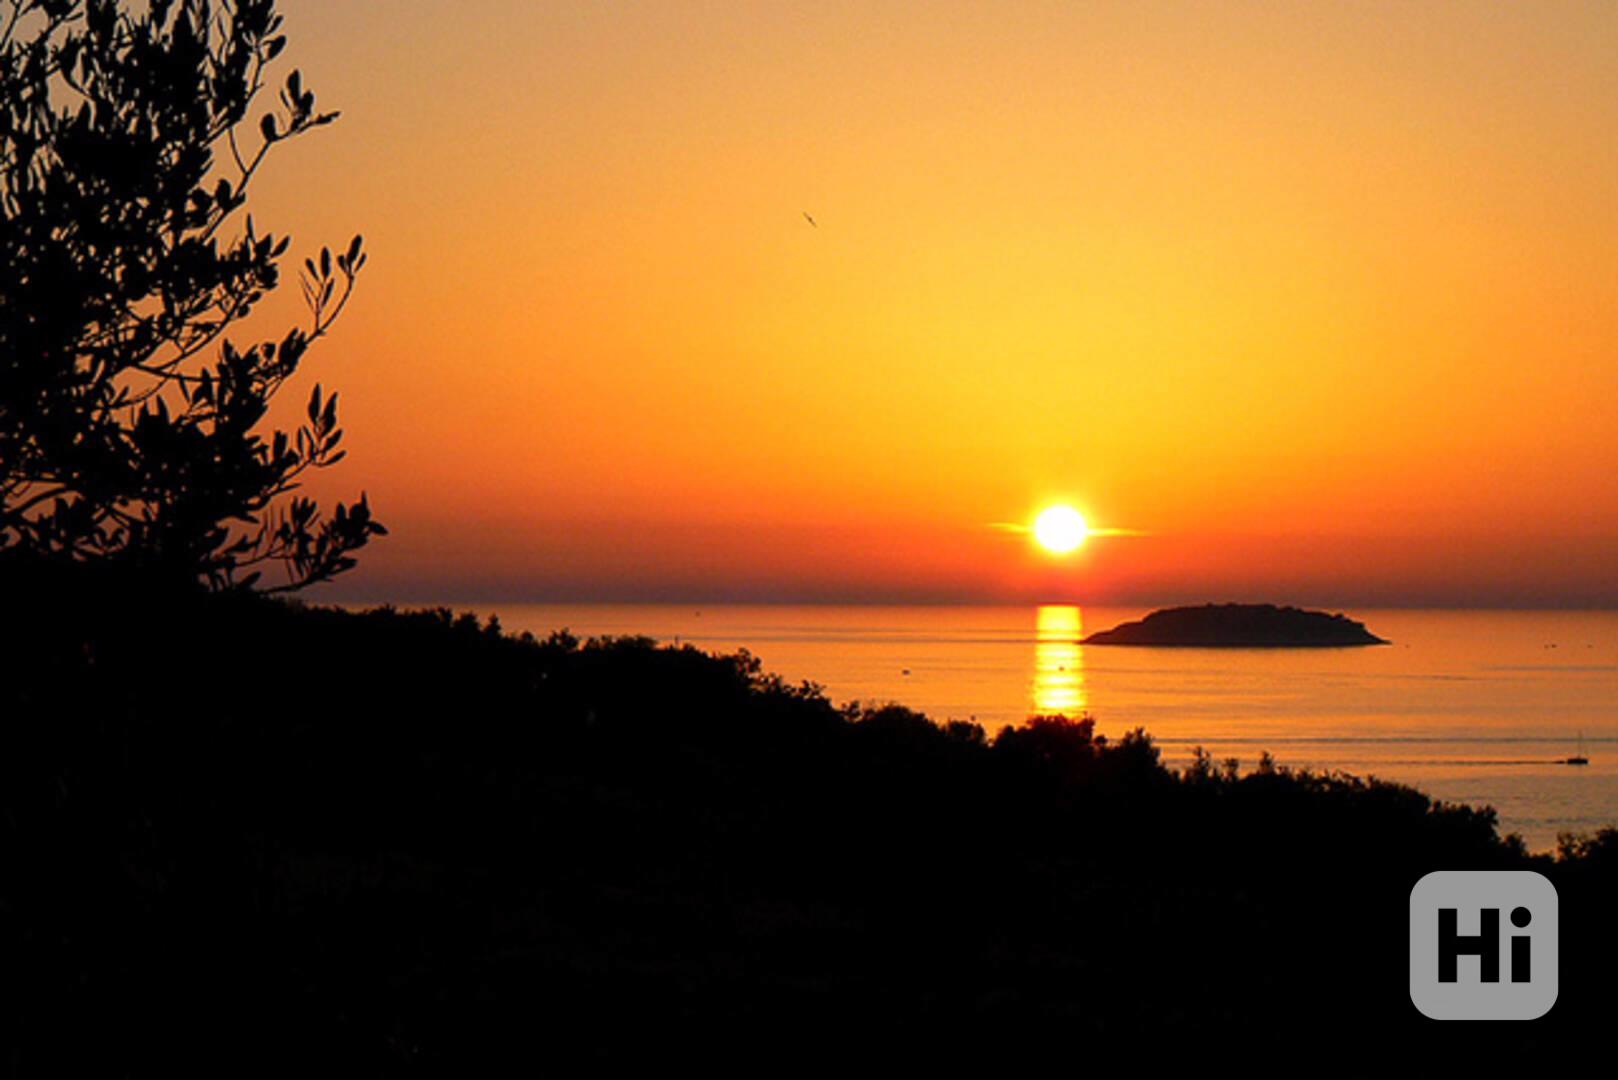 Chorvatsko, ubytování ve vile u moře s překrásným výhledem - foto 1